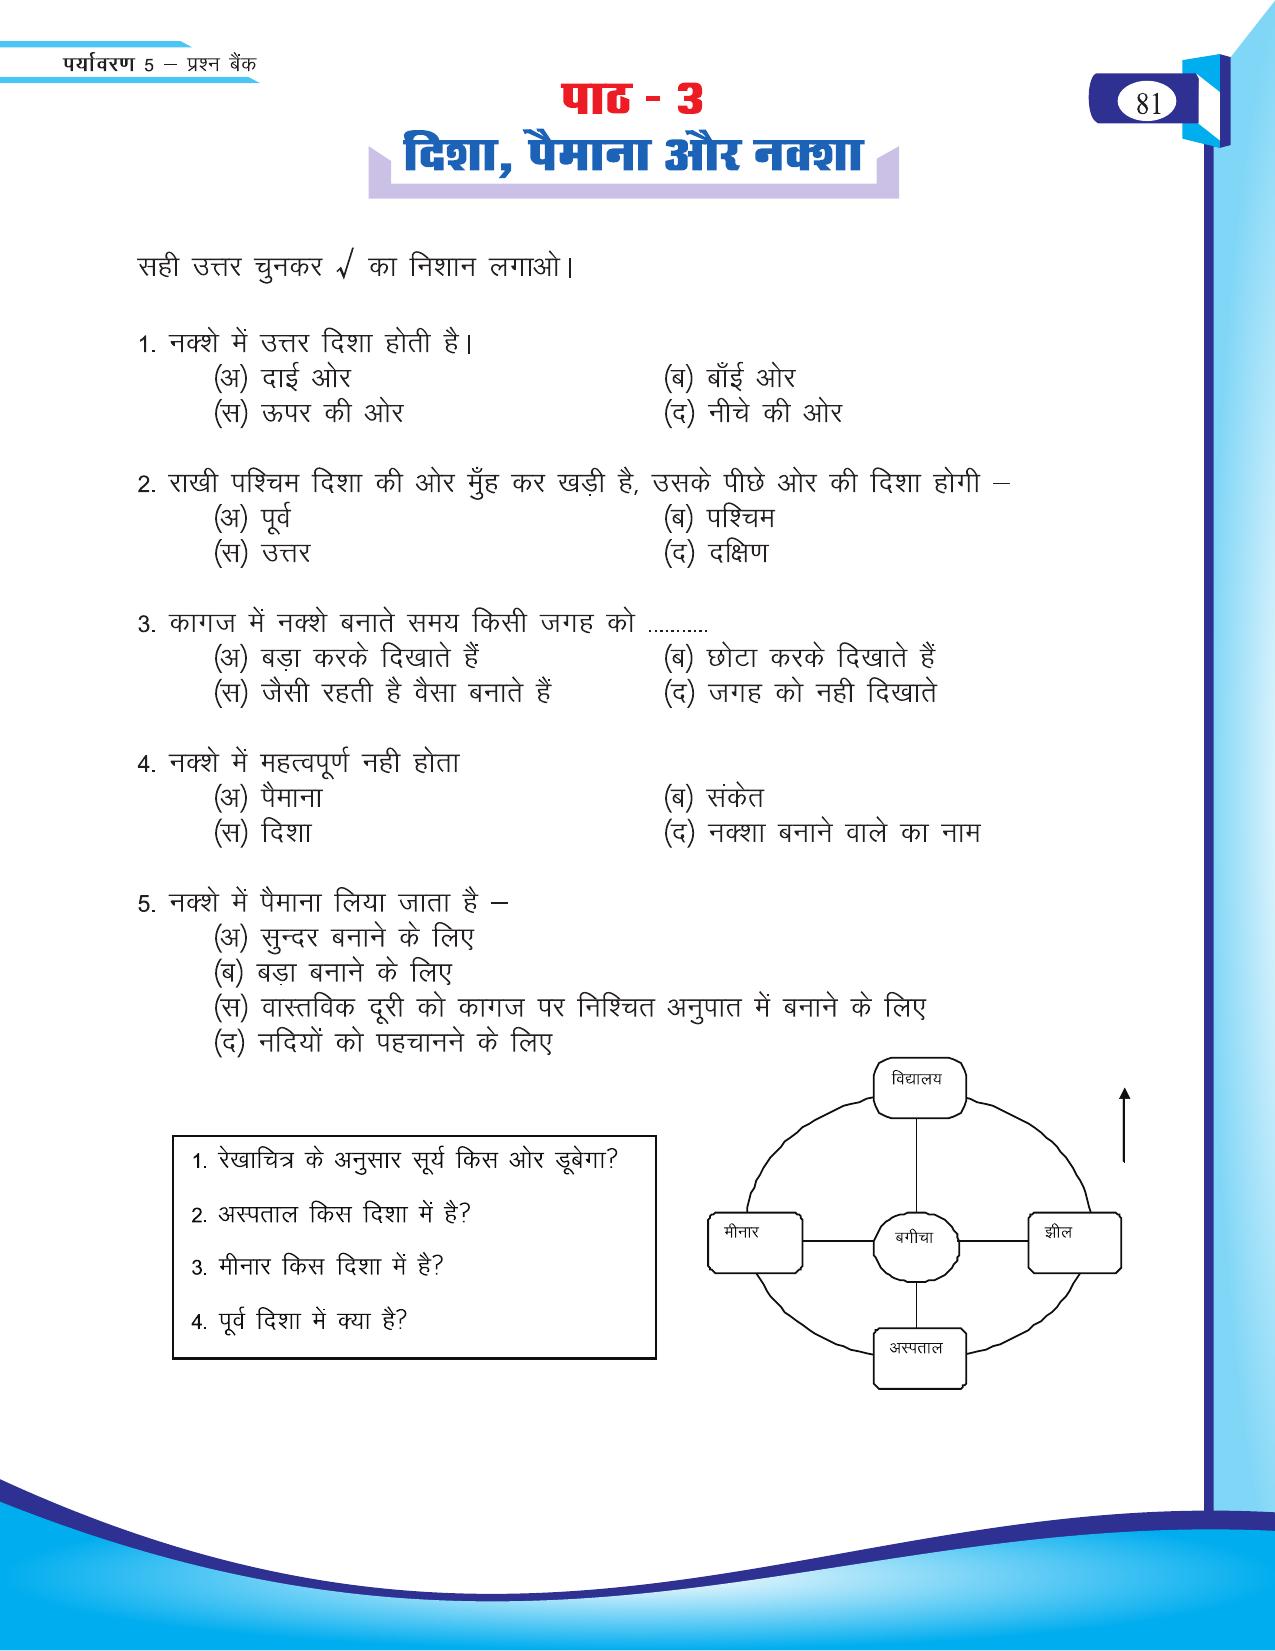 Chhattisgarh Board Class 5 EVS Question Bank 2015-16 - Page 7